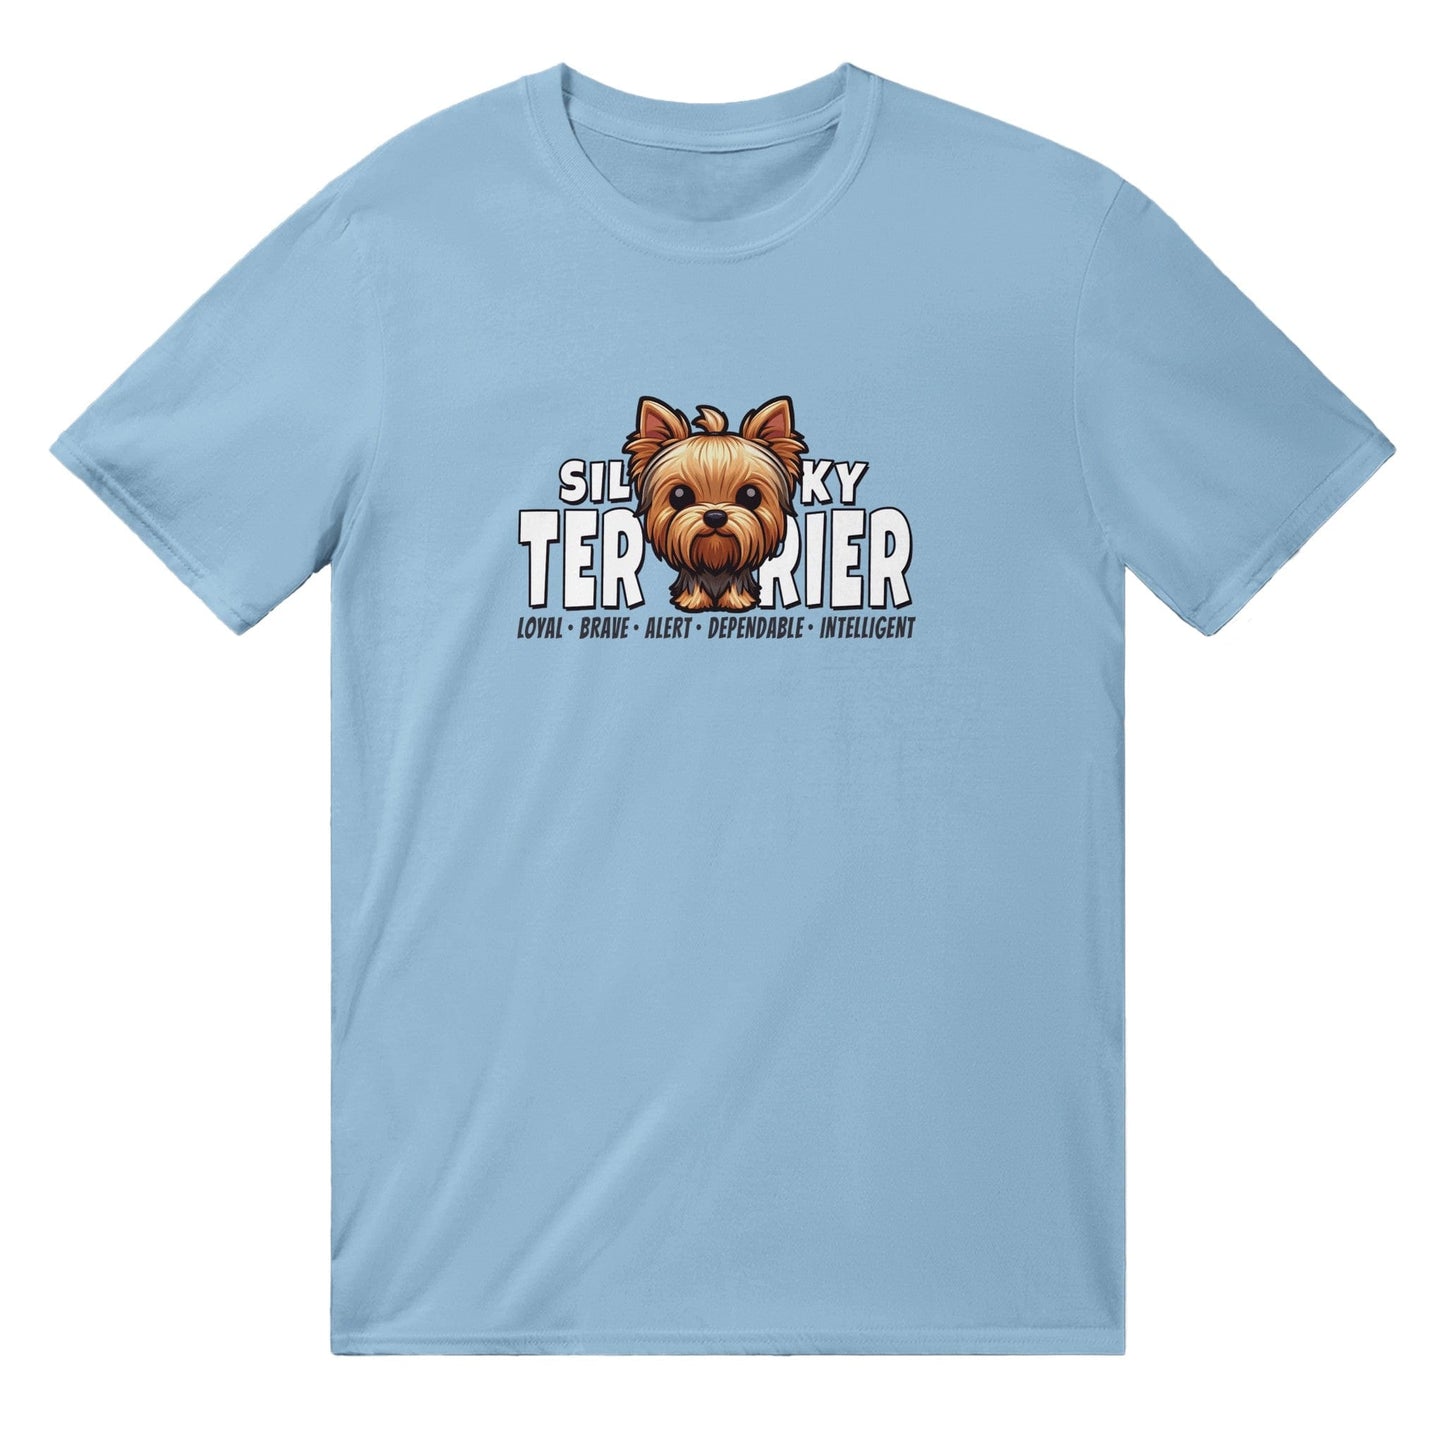 Silky Terrier T-Shirt Australia Online Color Light Blue / S